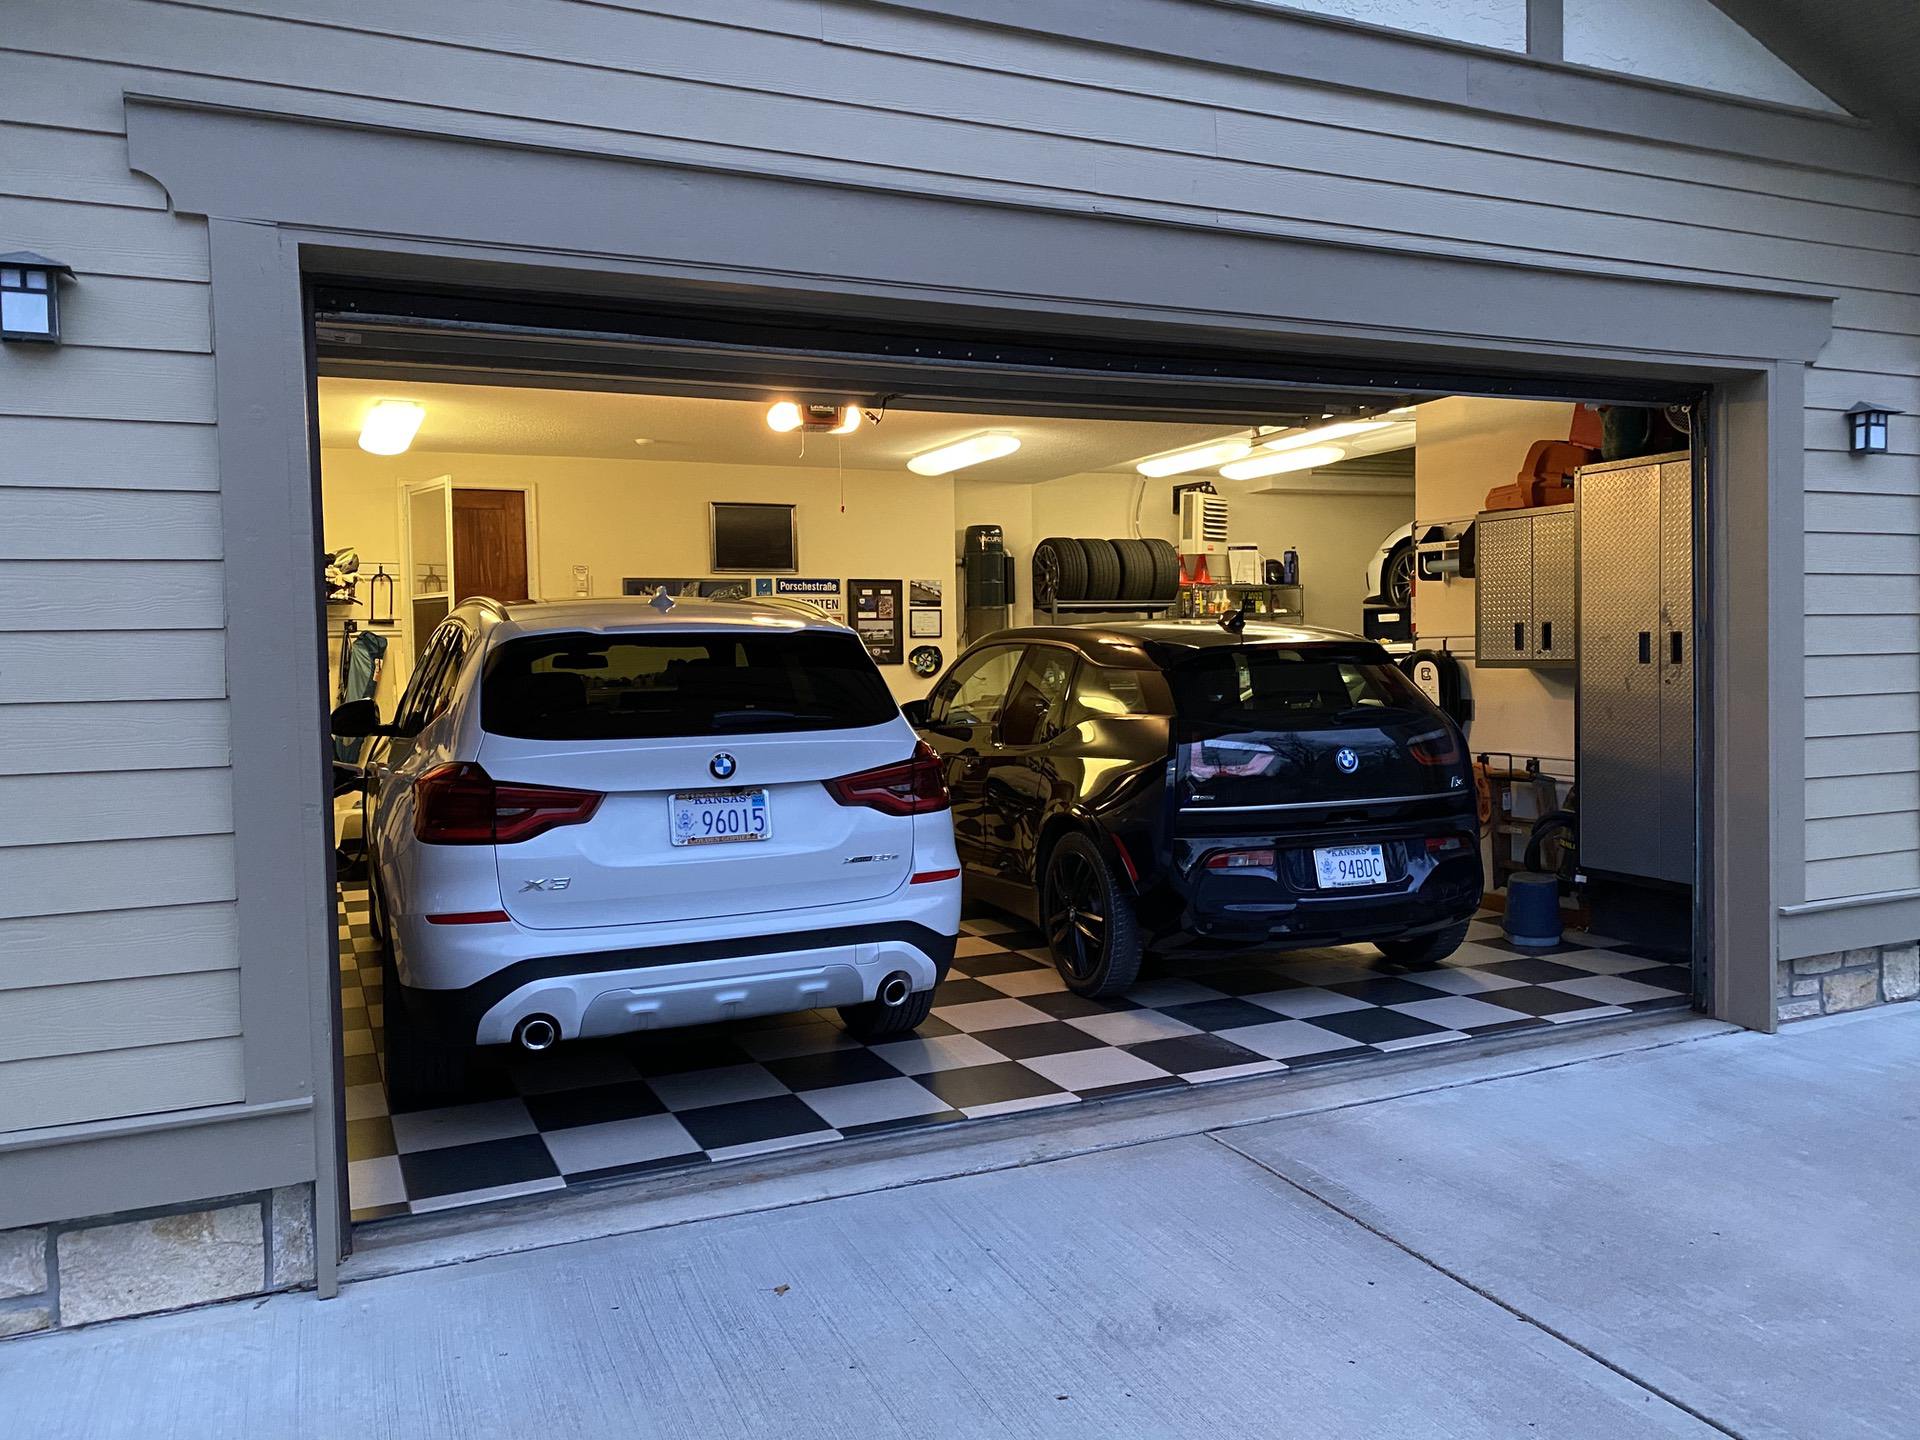 How To Program Your Garage Door Opener, How To Add More Lights Garage Door Opener